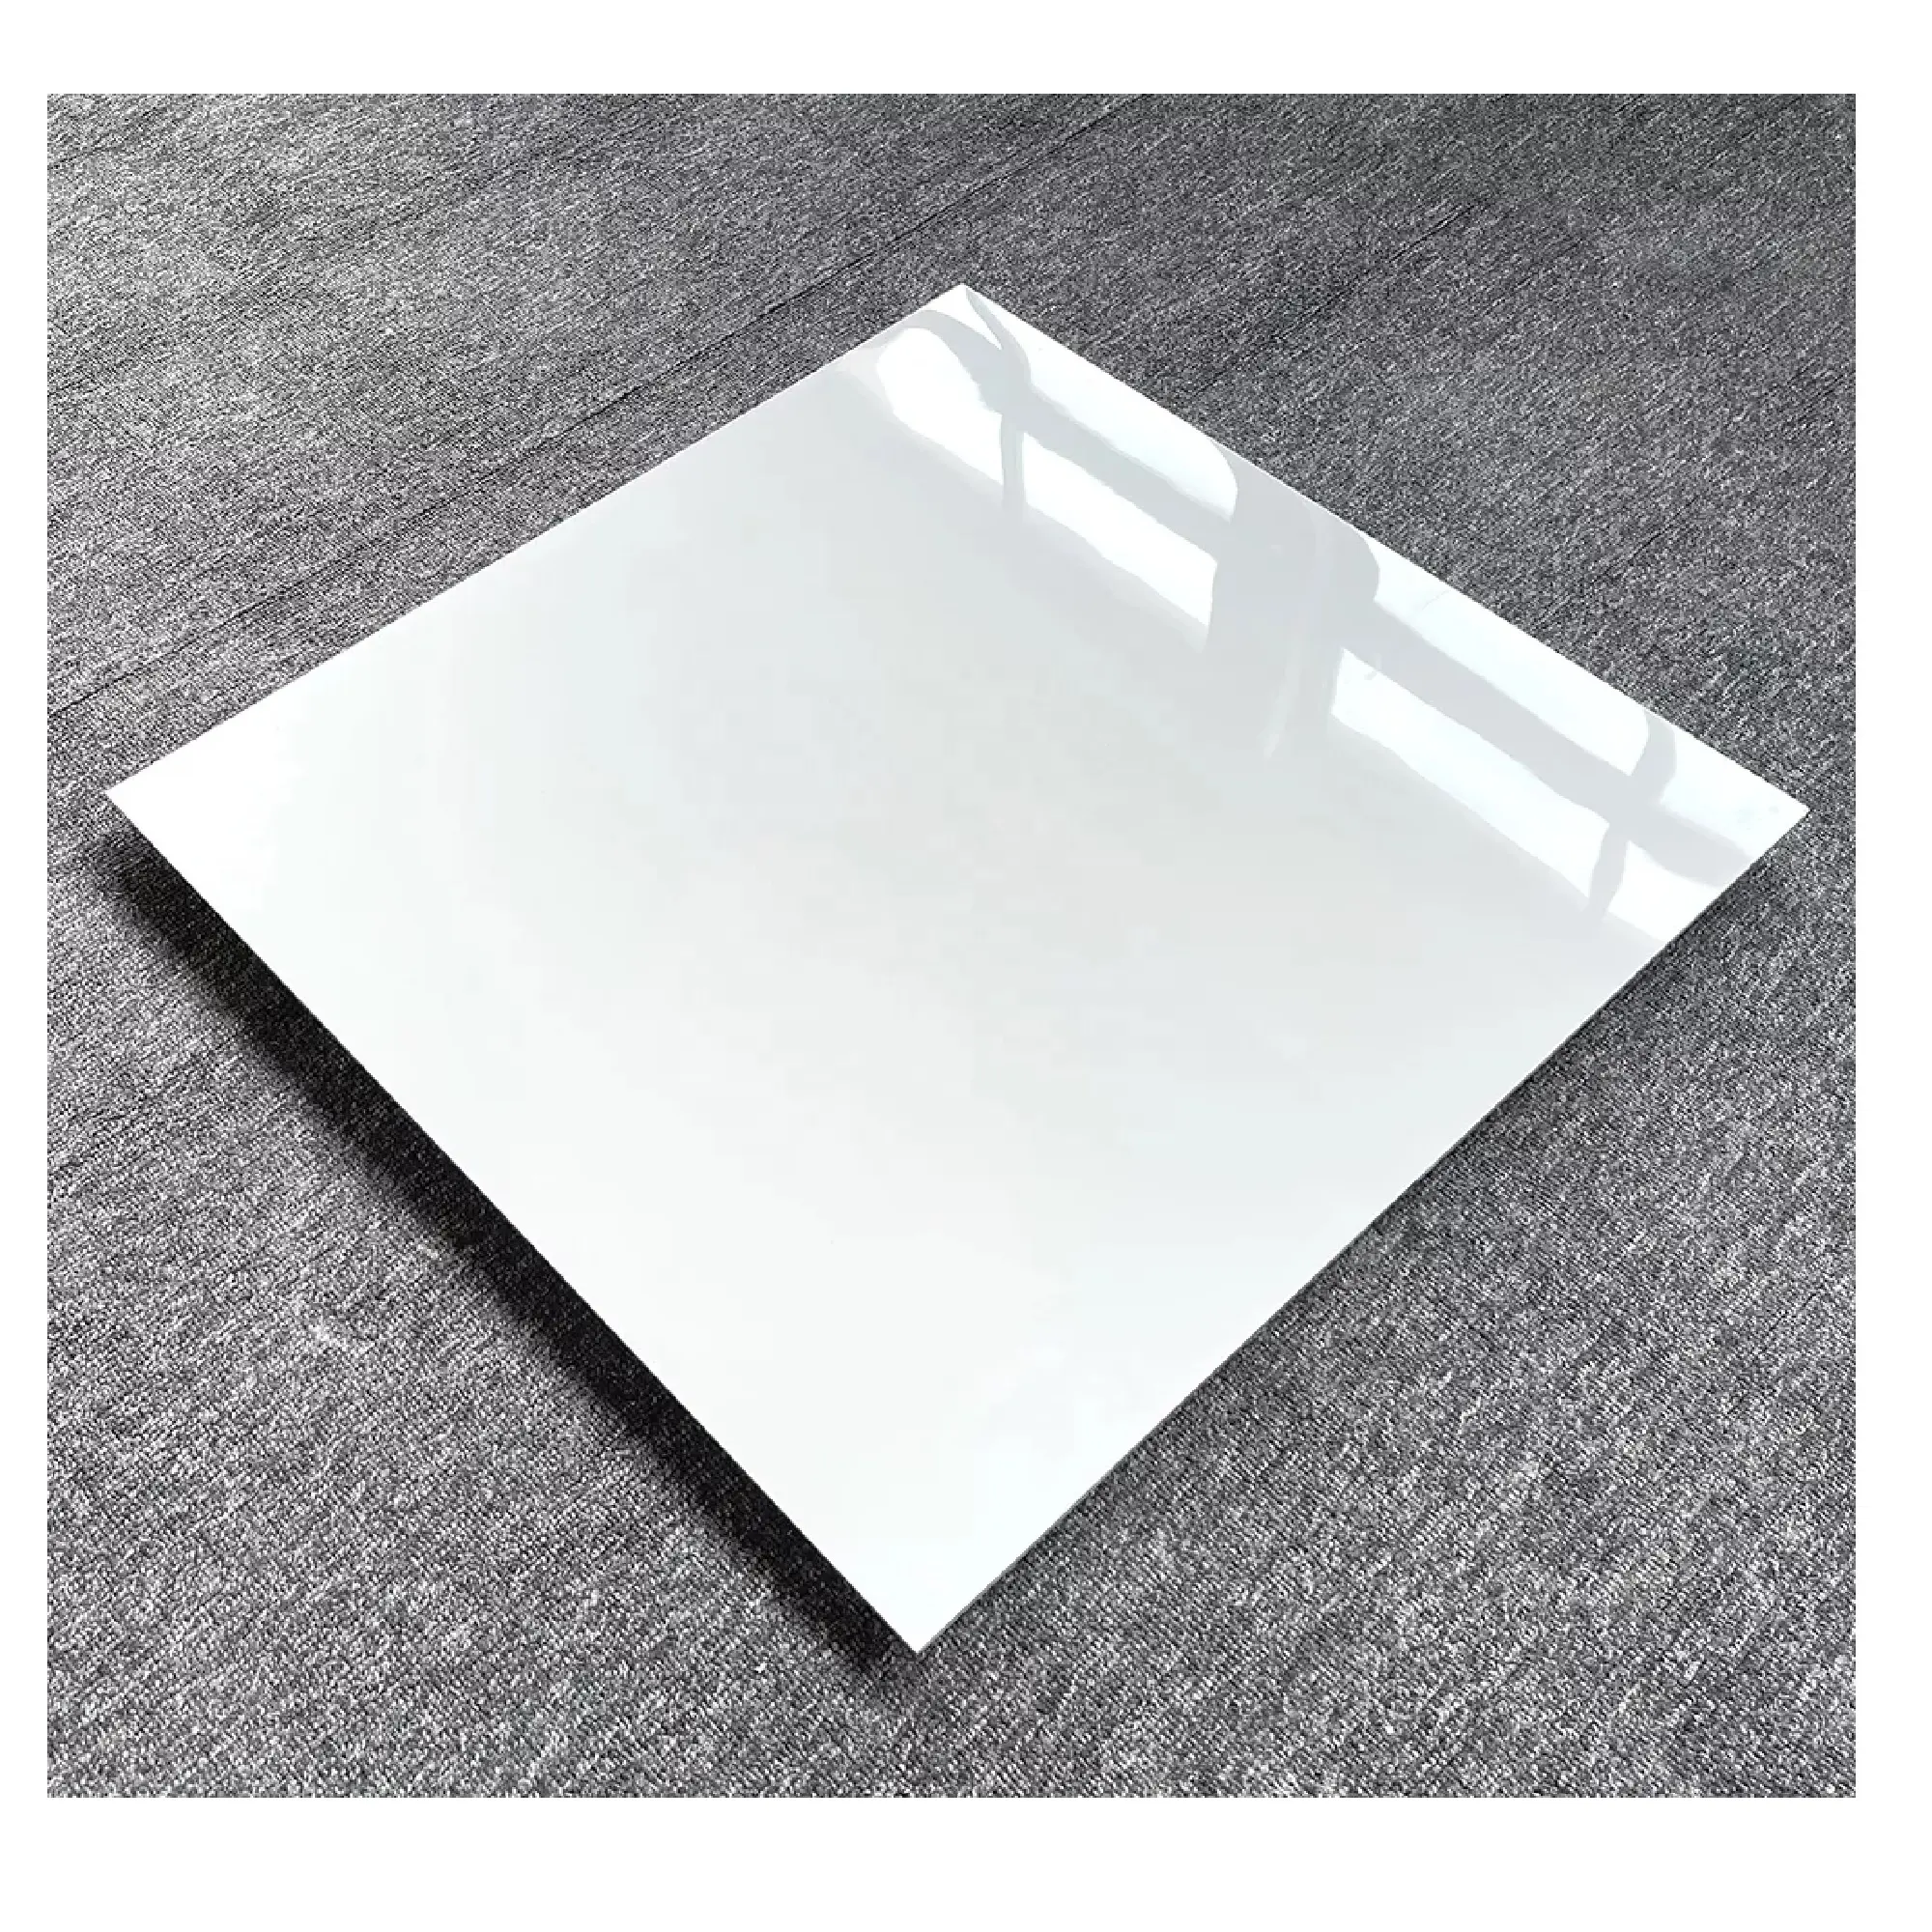 СУПЕРБЕЛАЯ фарфоровая плитка World Wave 60*120 см, Мраморная керамическая плитка 600*120 мм из Индии, белый фарфор Morbi, лучший дизайн